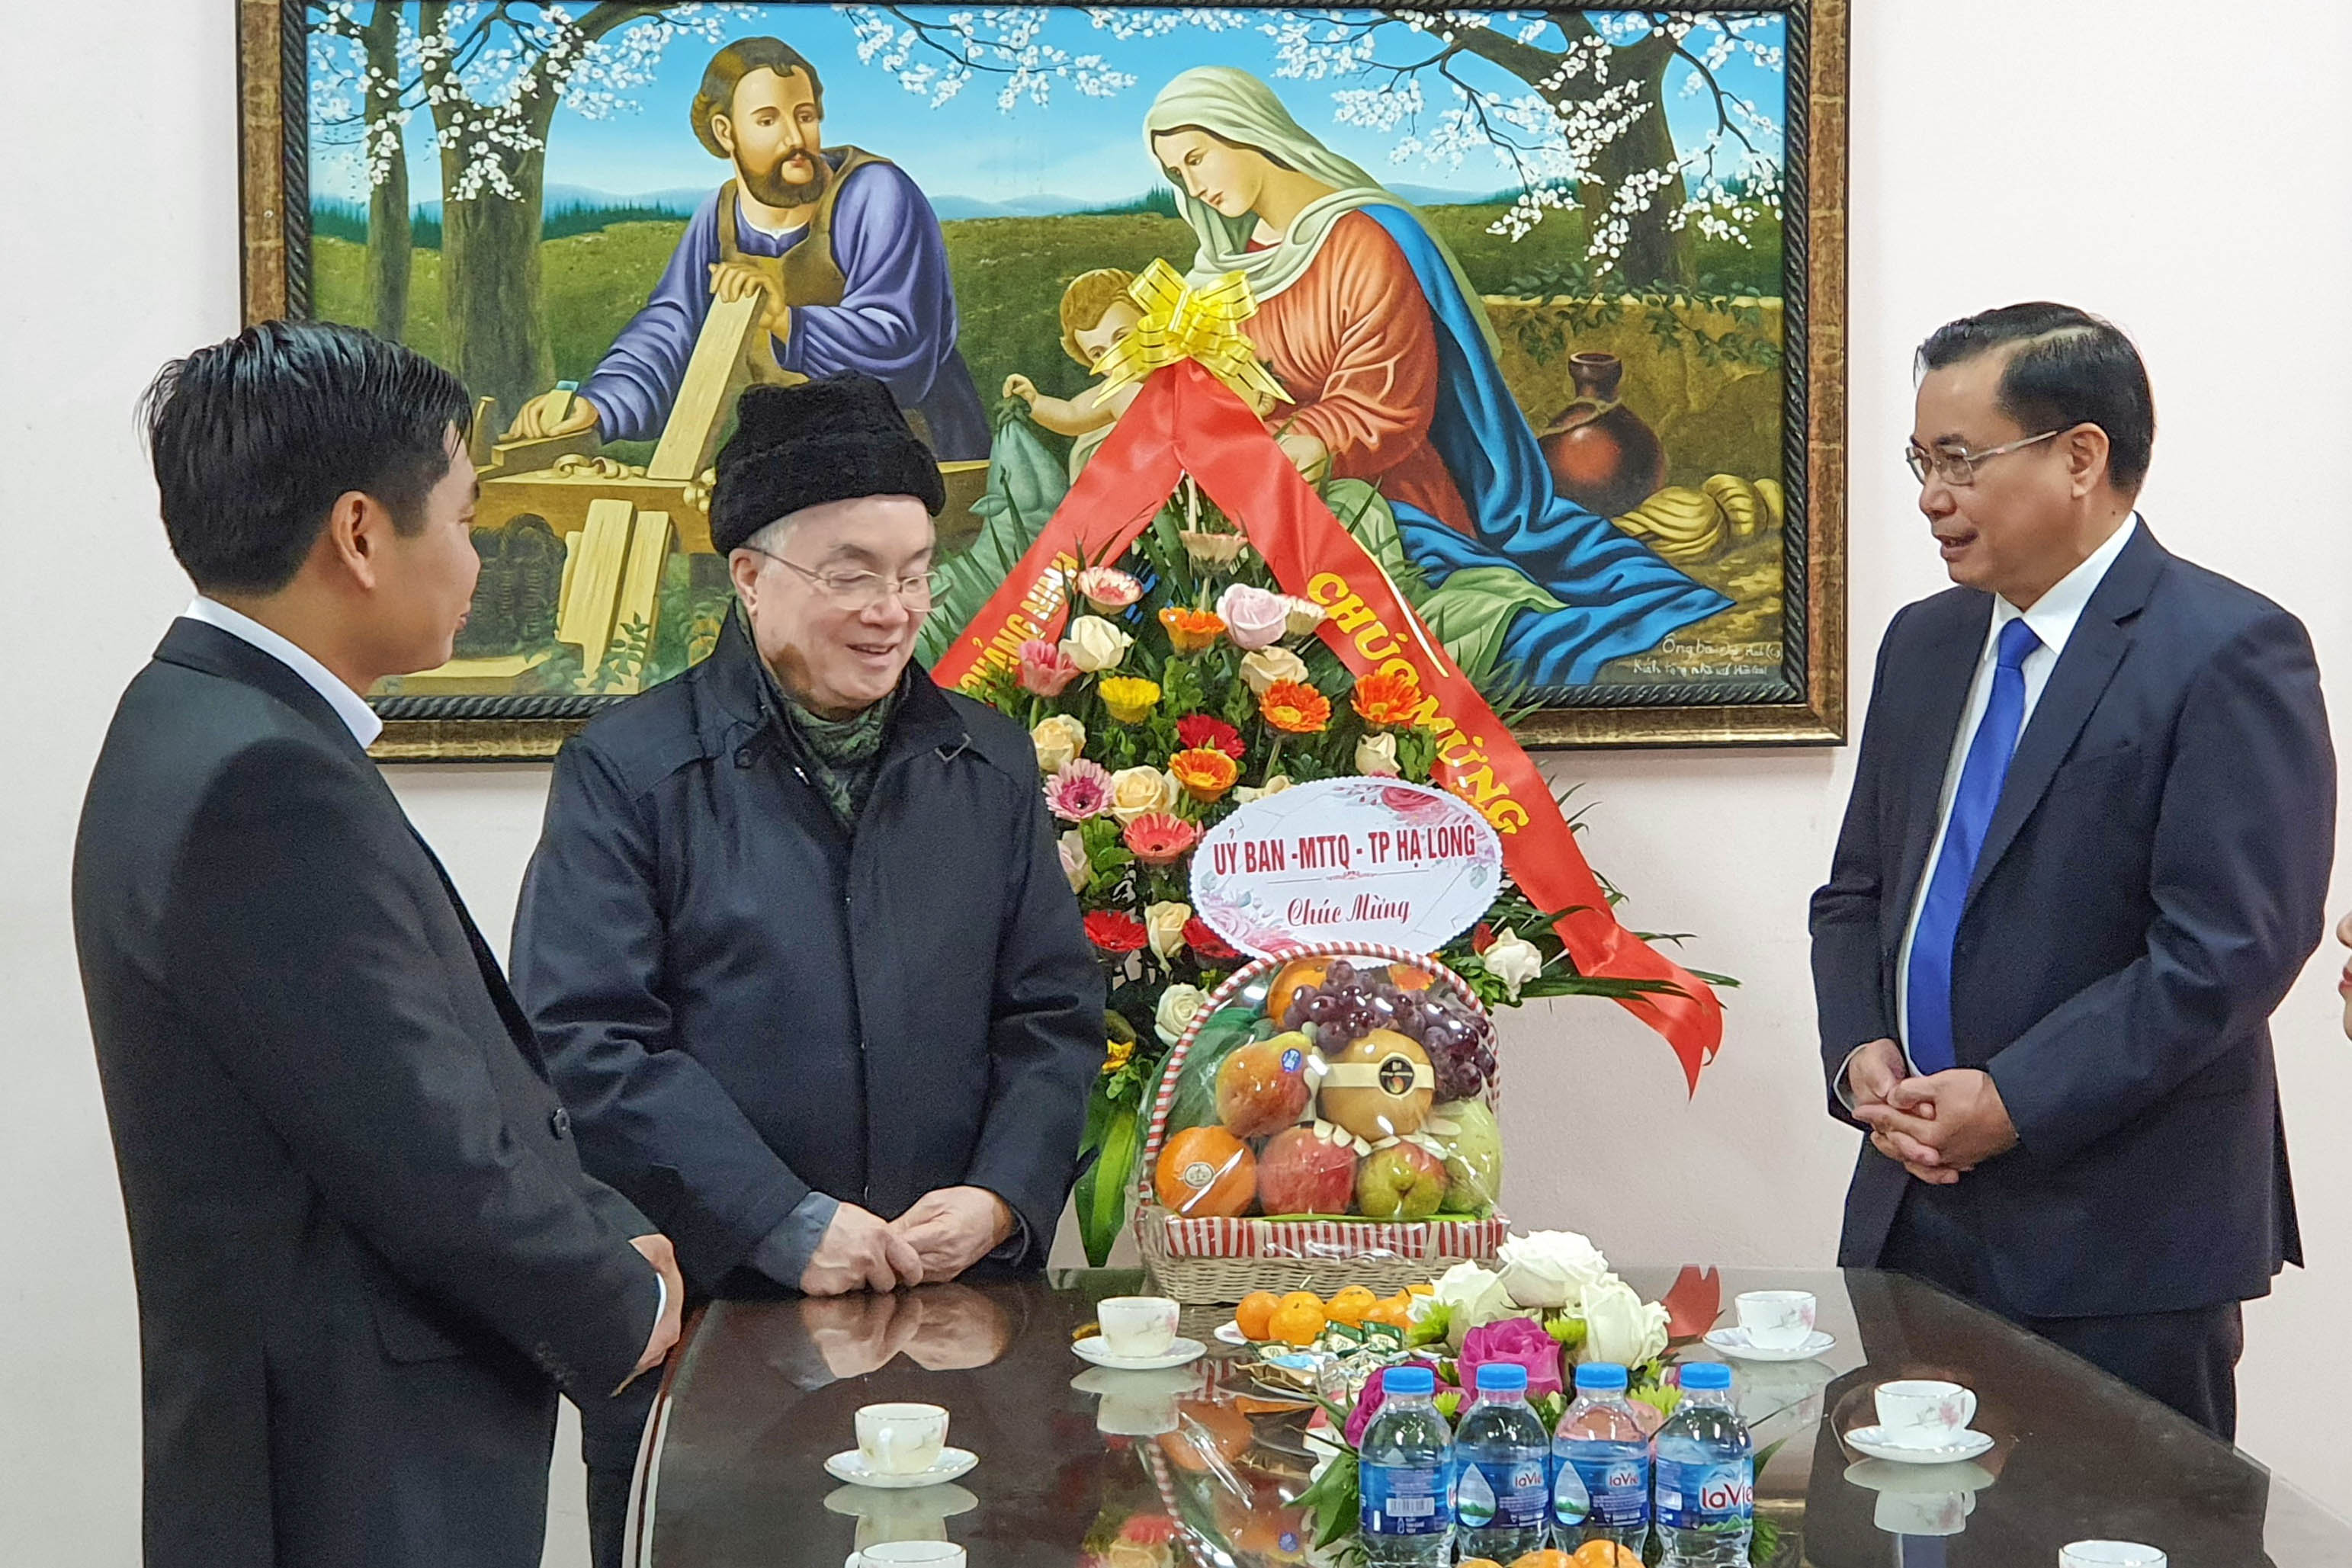 Lãnh đạo Ủy ban MTTQ tỉnh (phải) thăm Linh mục Nguyễn Chấn Hưng và gửi lời chúc Giáng sinh an lành tới bà con Giáo hạt Hòn Gai.